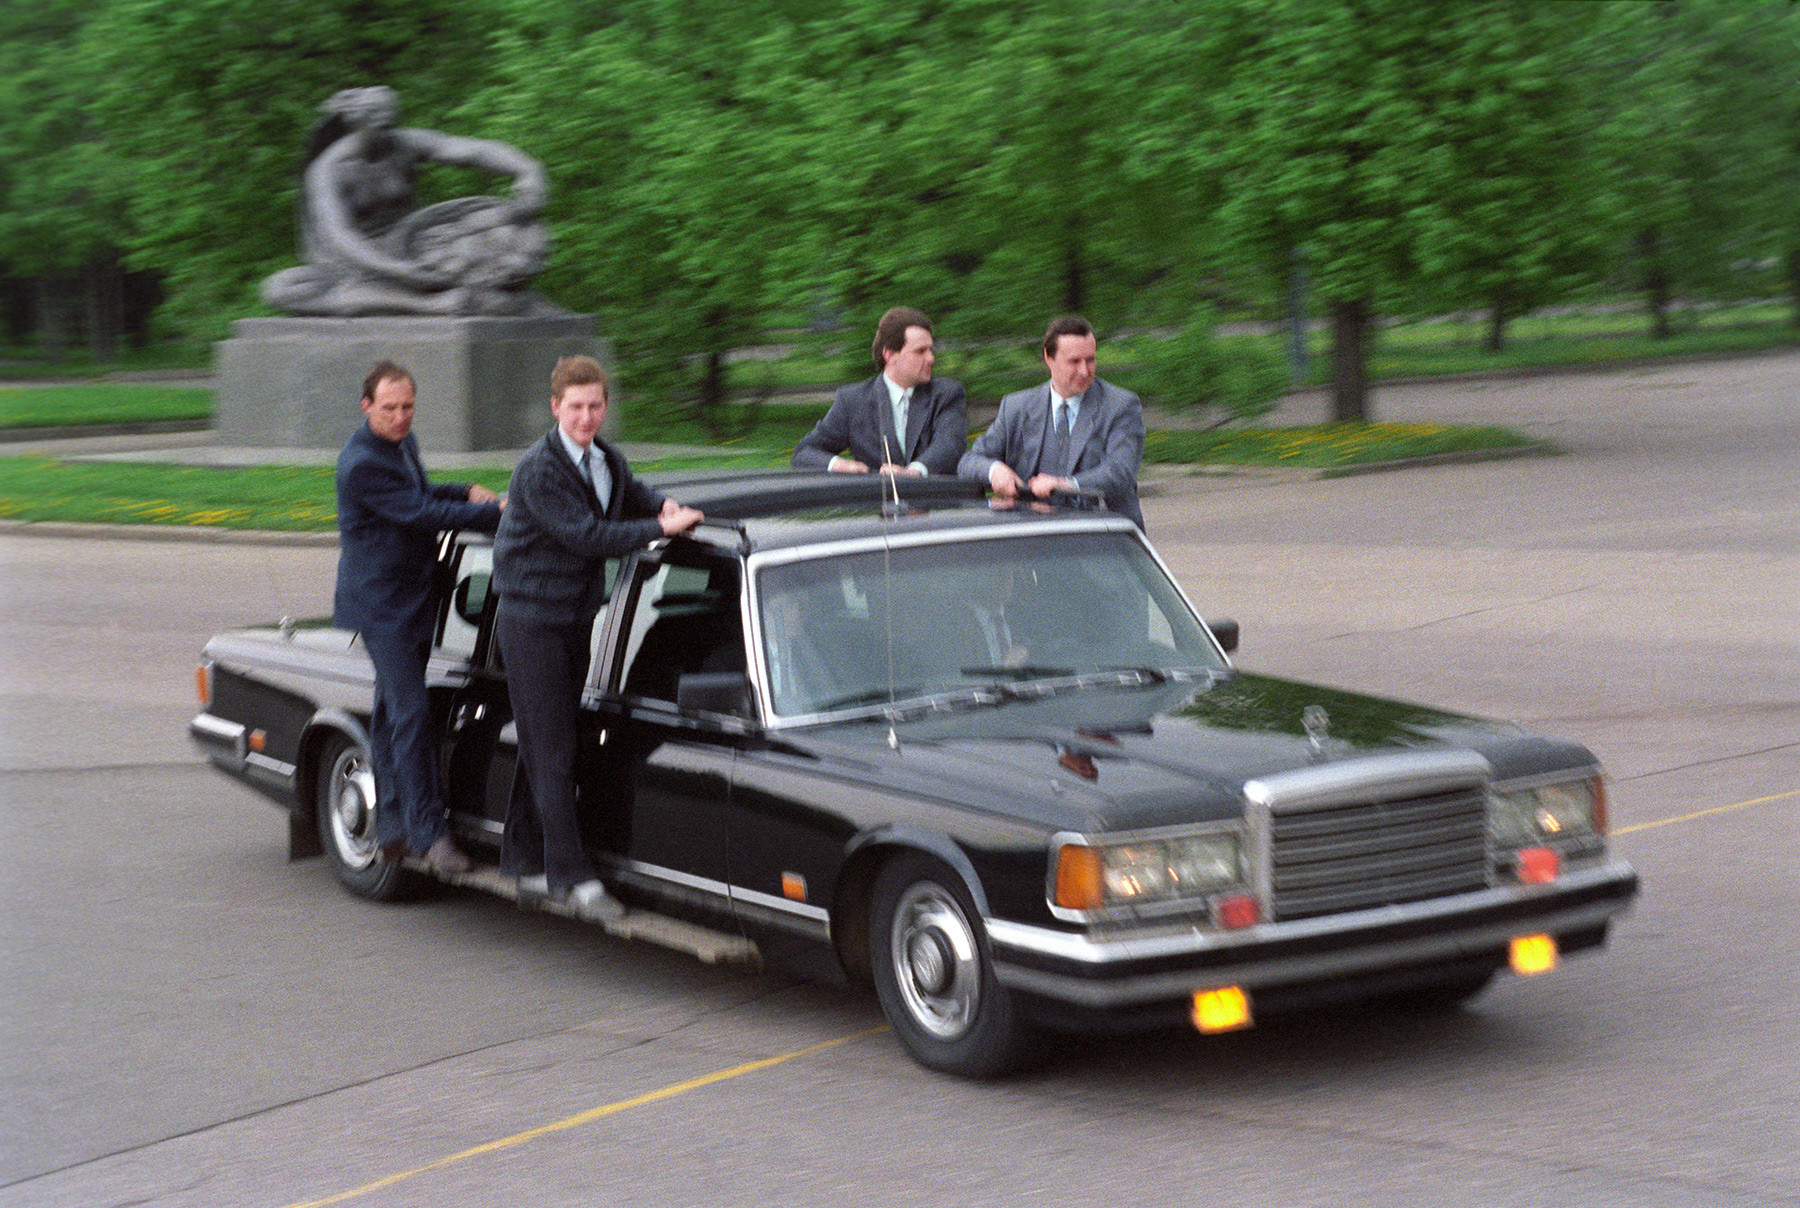 1991年。ロシア連邦警護庁の職員たち。ロシア連邦警護庁の前身はソ連国家保安委員会 (KGB) 第9局だ。